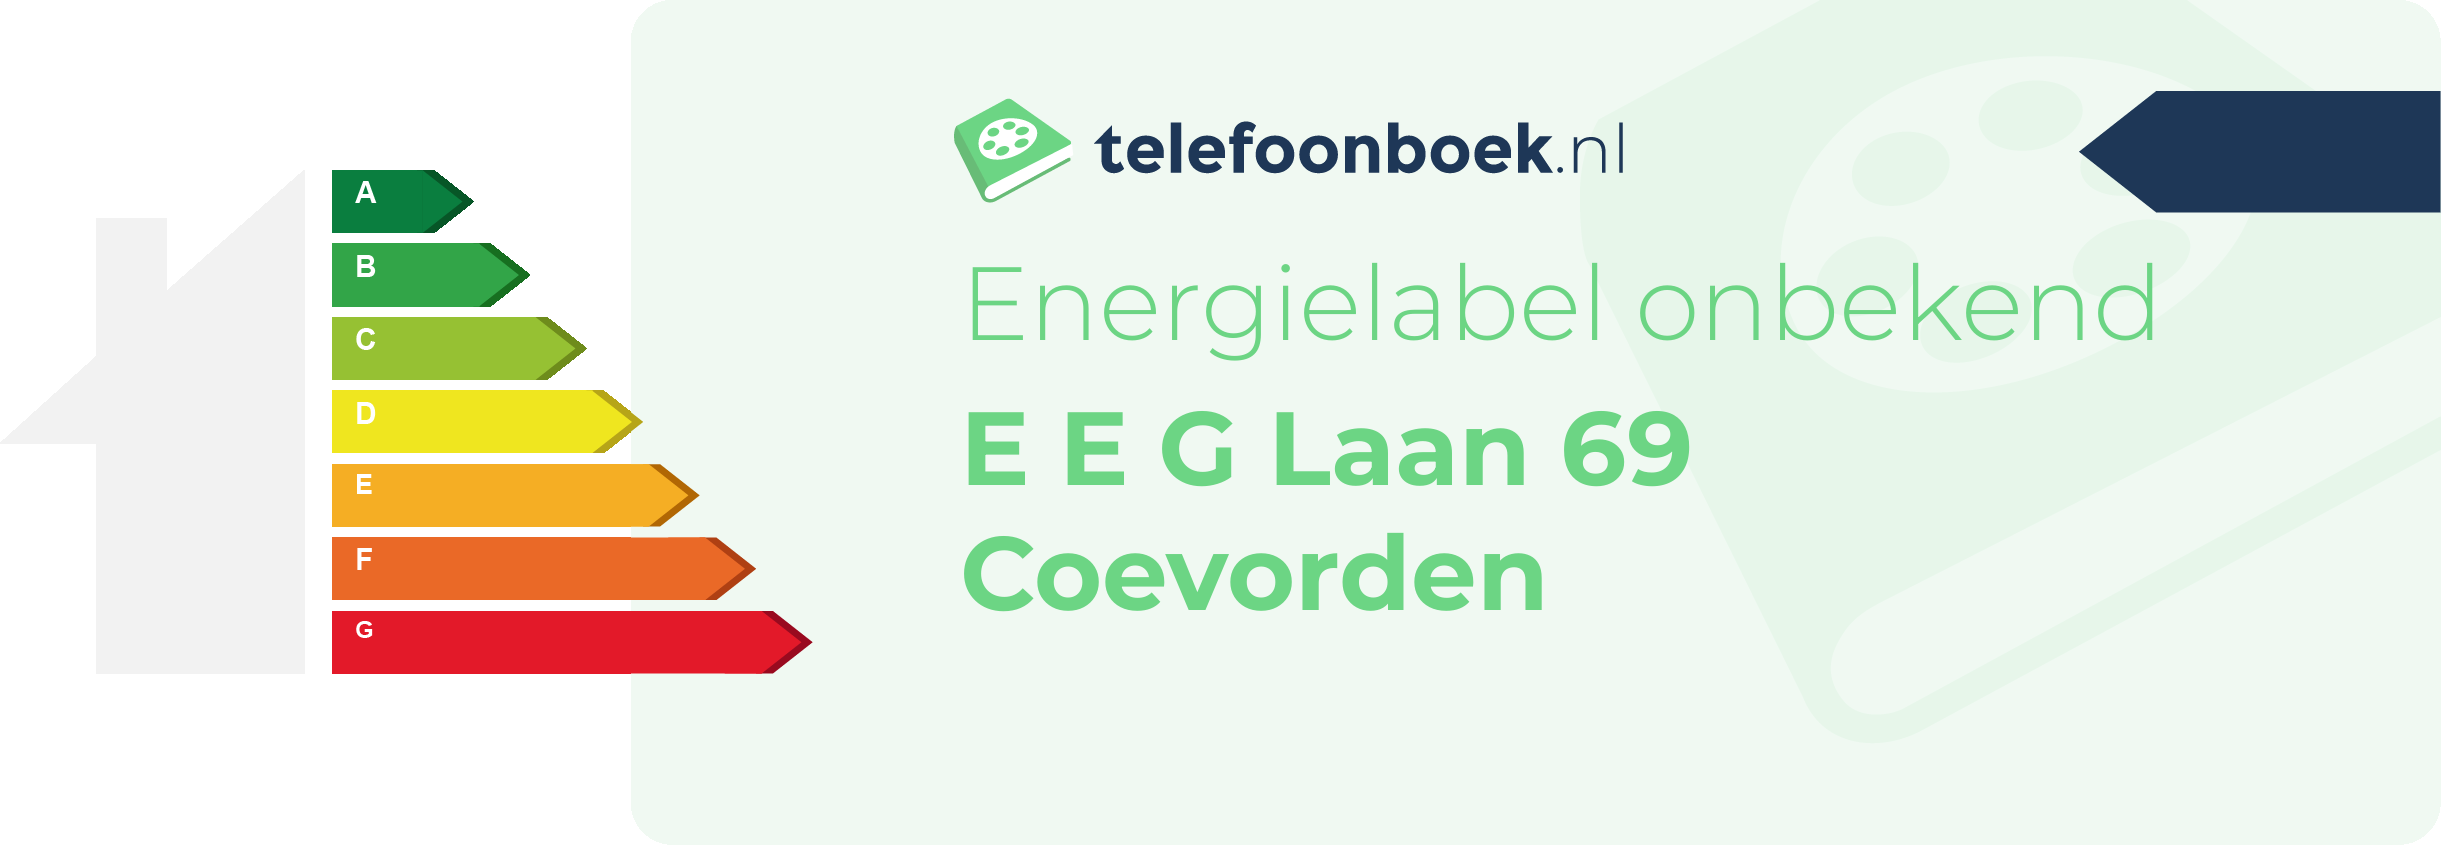 Energielabel E E G Laan 69 Coevorden